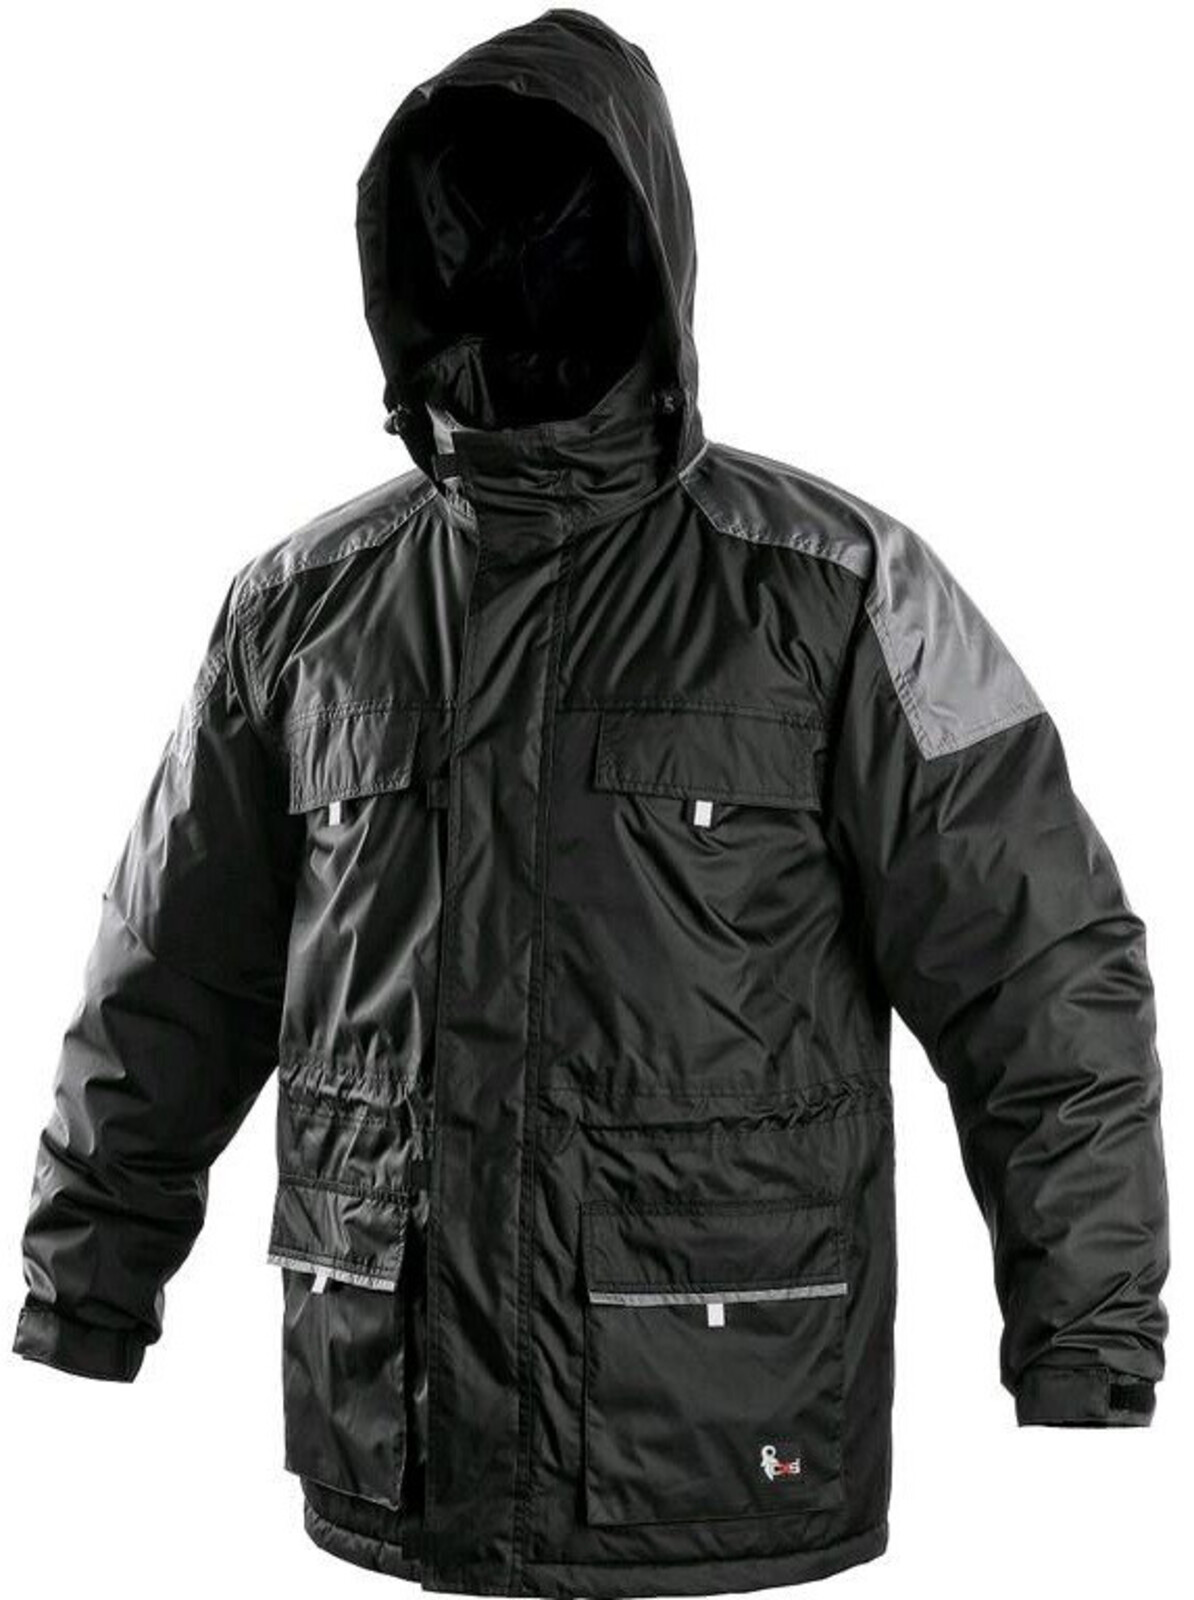 Pánska zimná bunda CXS Fremont - veľkosť: 4XL, farba: čierna/sivá